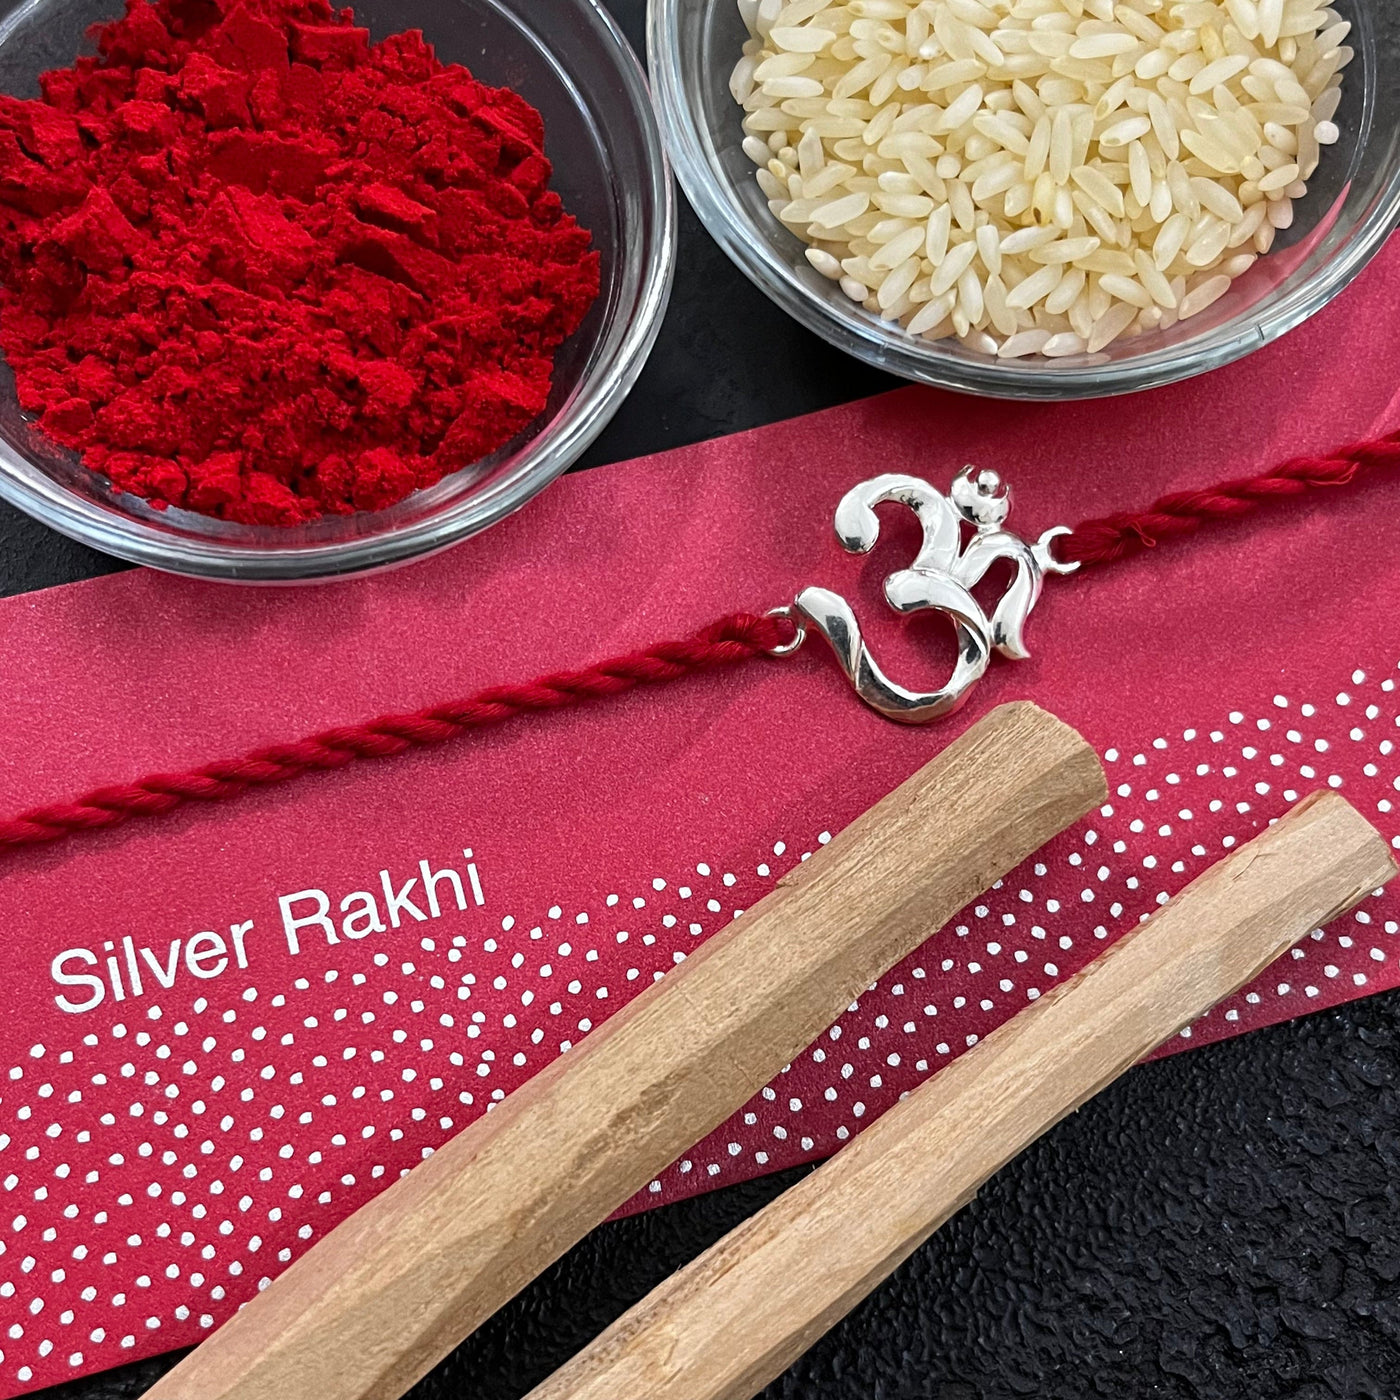 Gifts of Love Gosai Silver Rakhi | 92.5 Pure Silver Rakhis